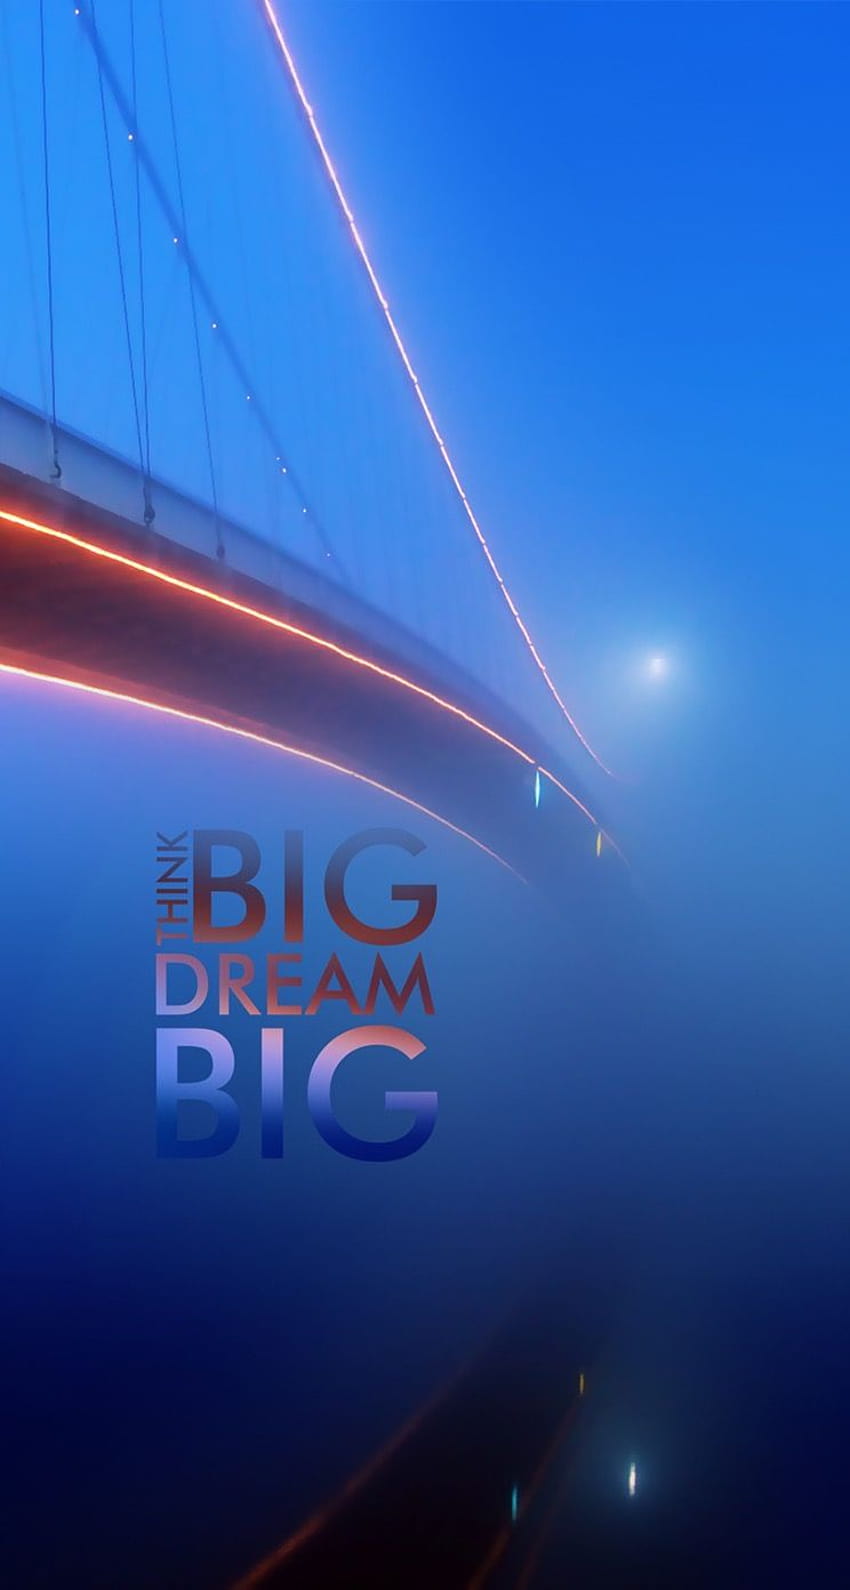 ¡TOCA Y OBTÉN LA APLICACIÓN! Citas Ciudad Azul Puente Niebla Resplandeciente Piensa en grande Sueña iPhone 5 fondo de pantalla del teléfono